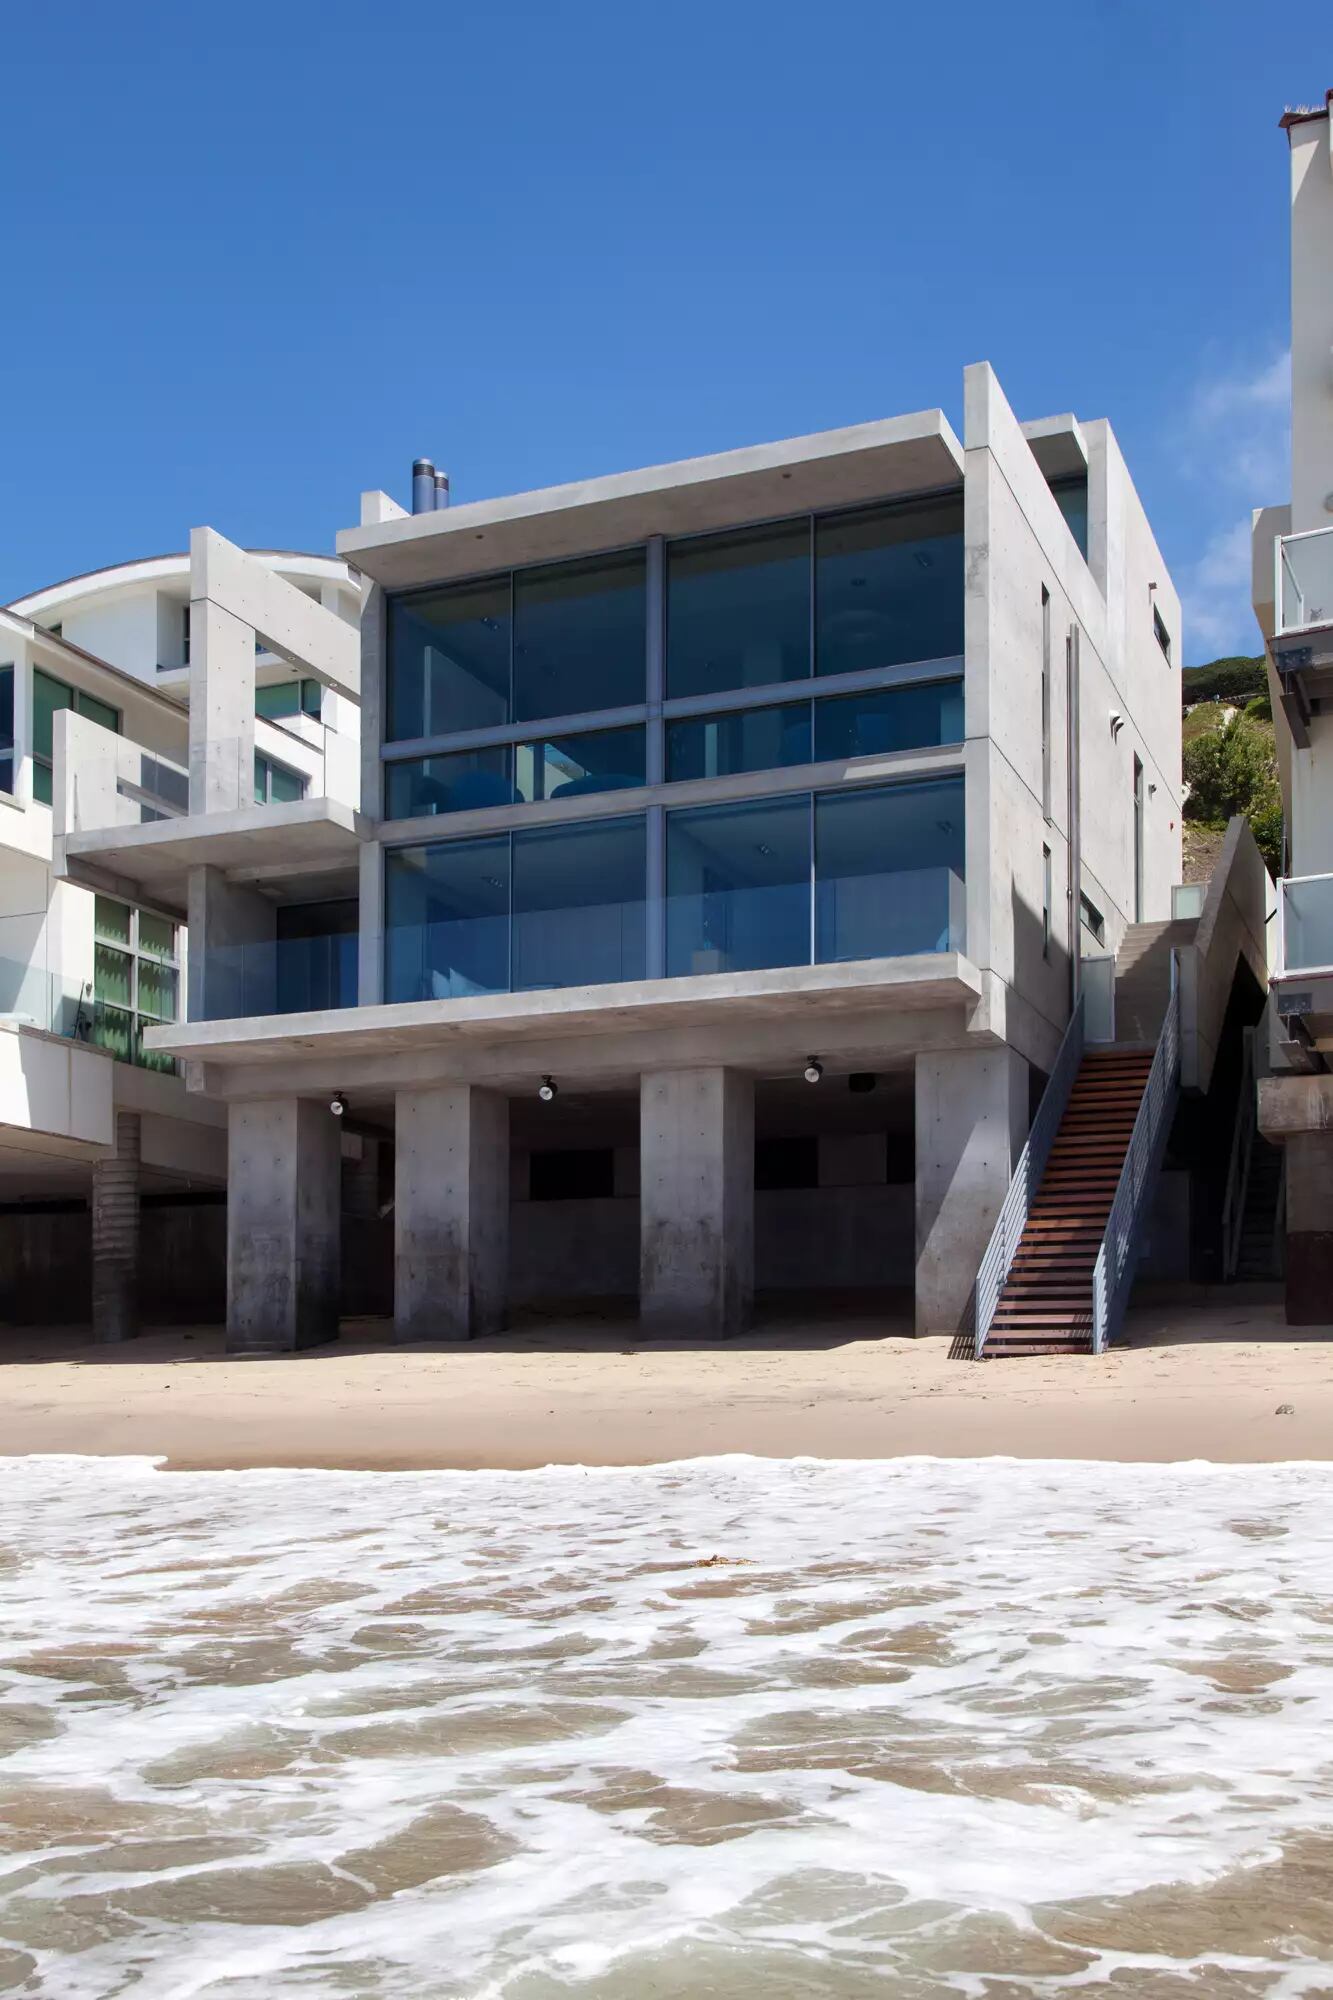 Casa de praia de Kanye West também 'encalhou' e está à espera de compradores, na Califórnia